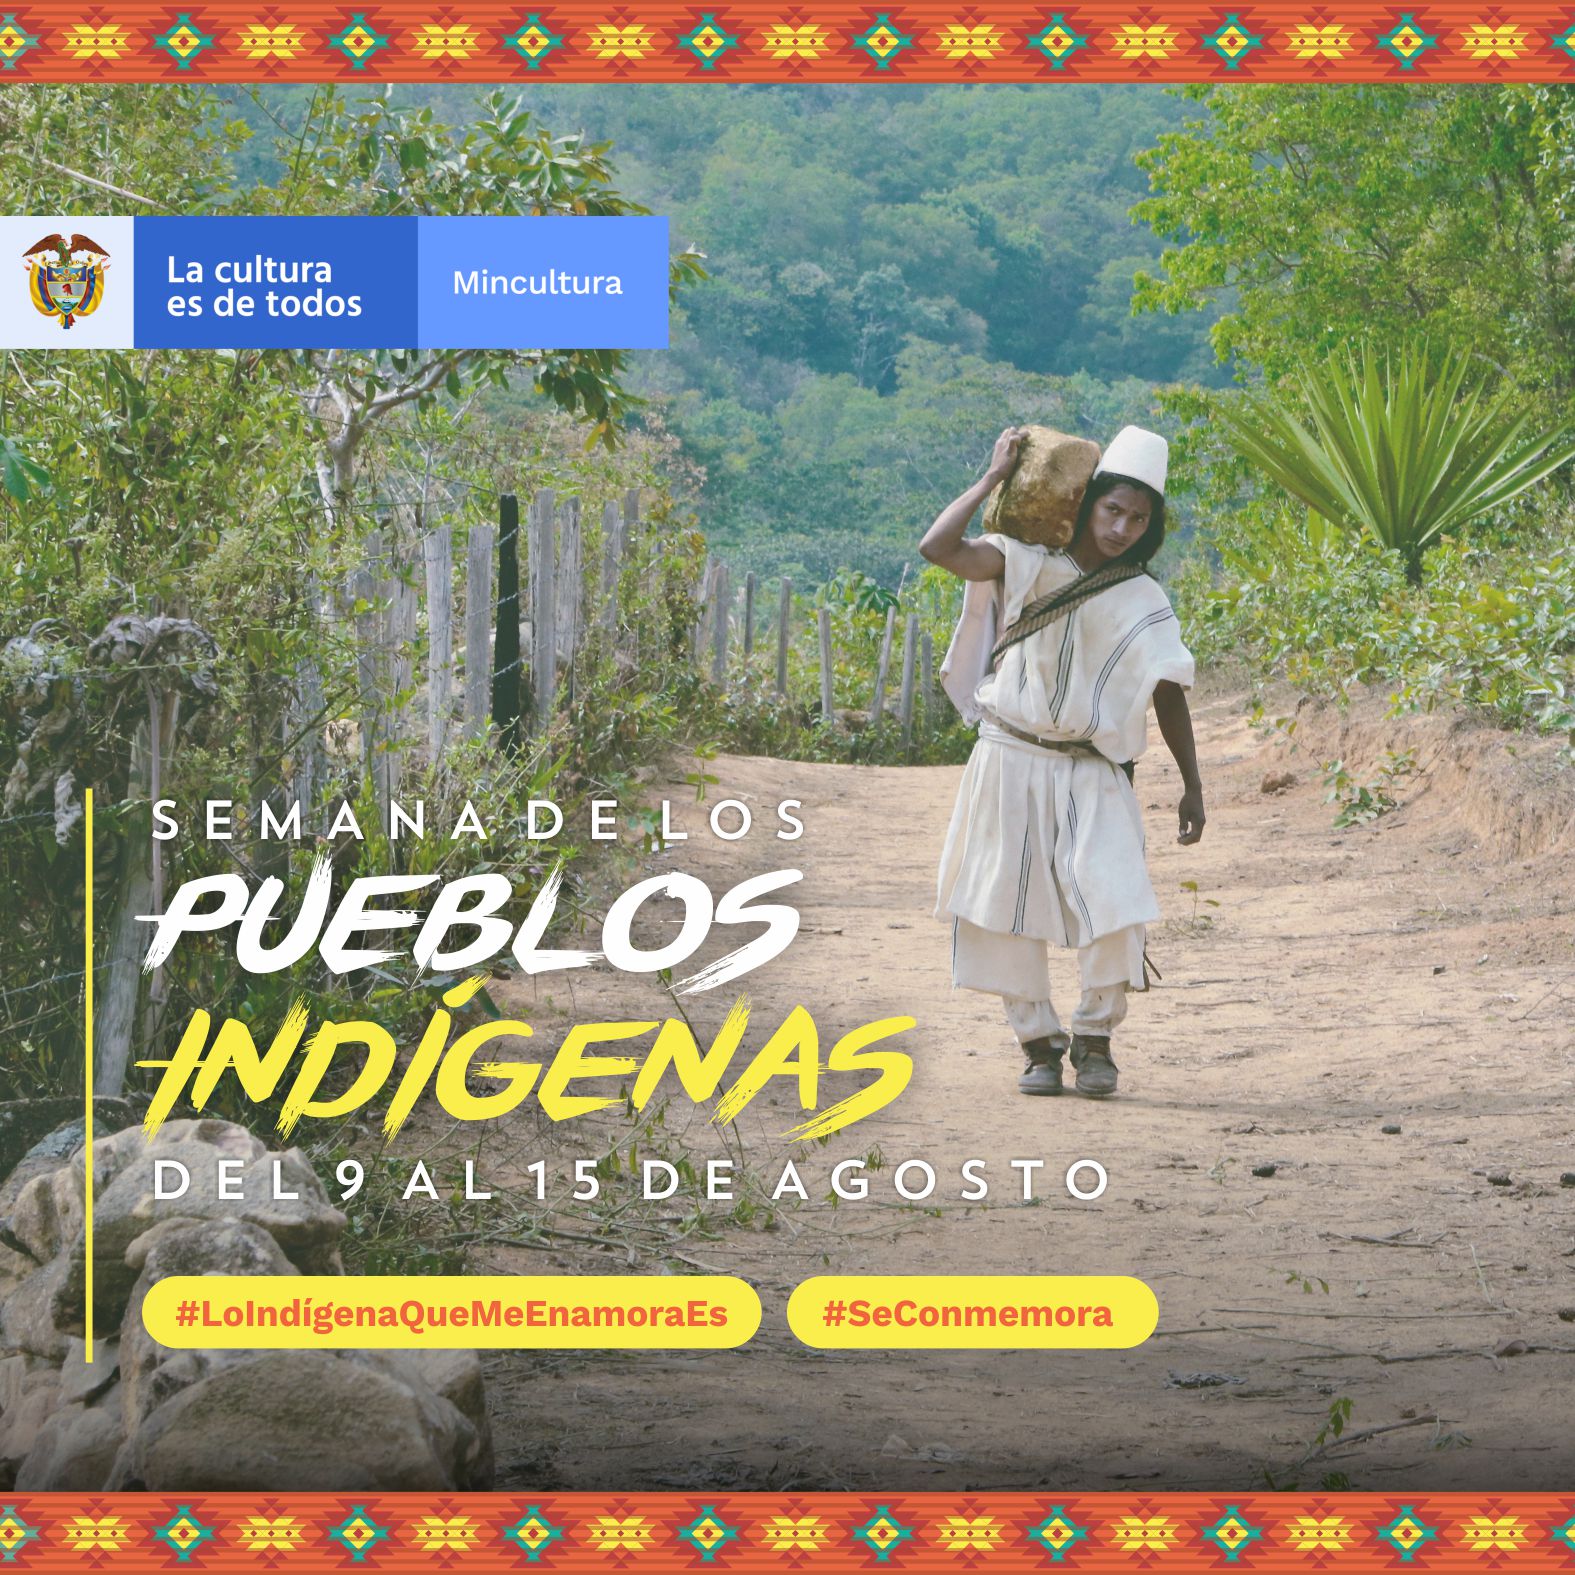 El Ministerio de Cultura conmemora la Semana de los Pueblos Indígenas 